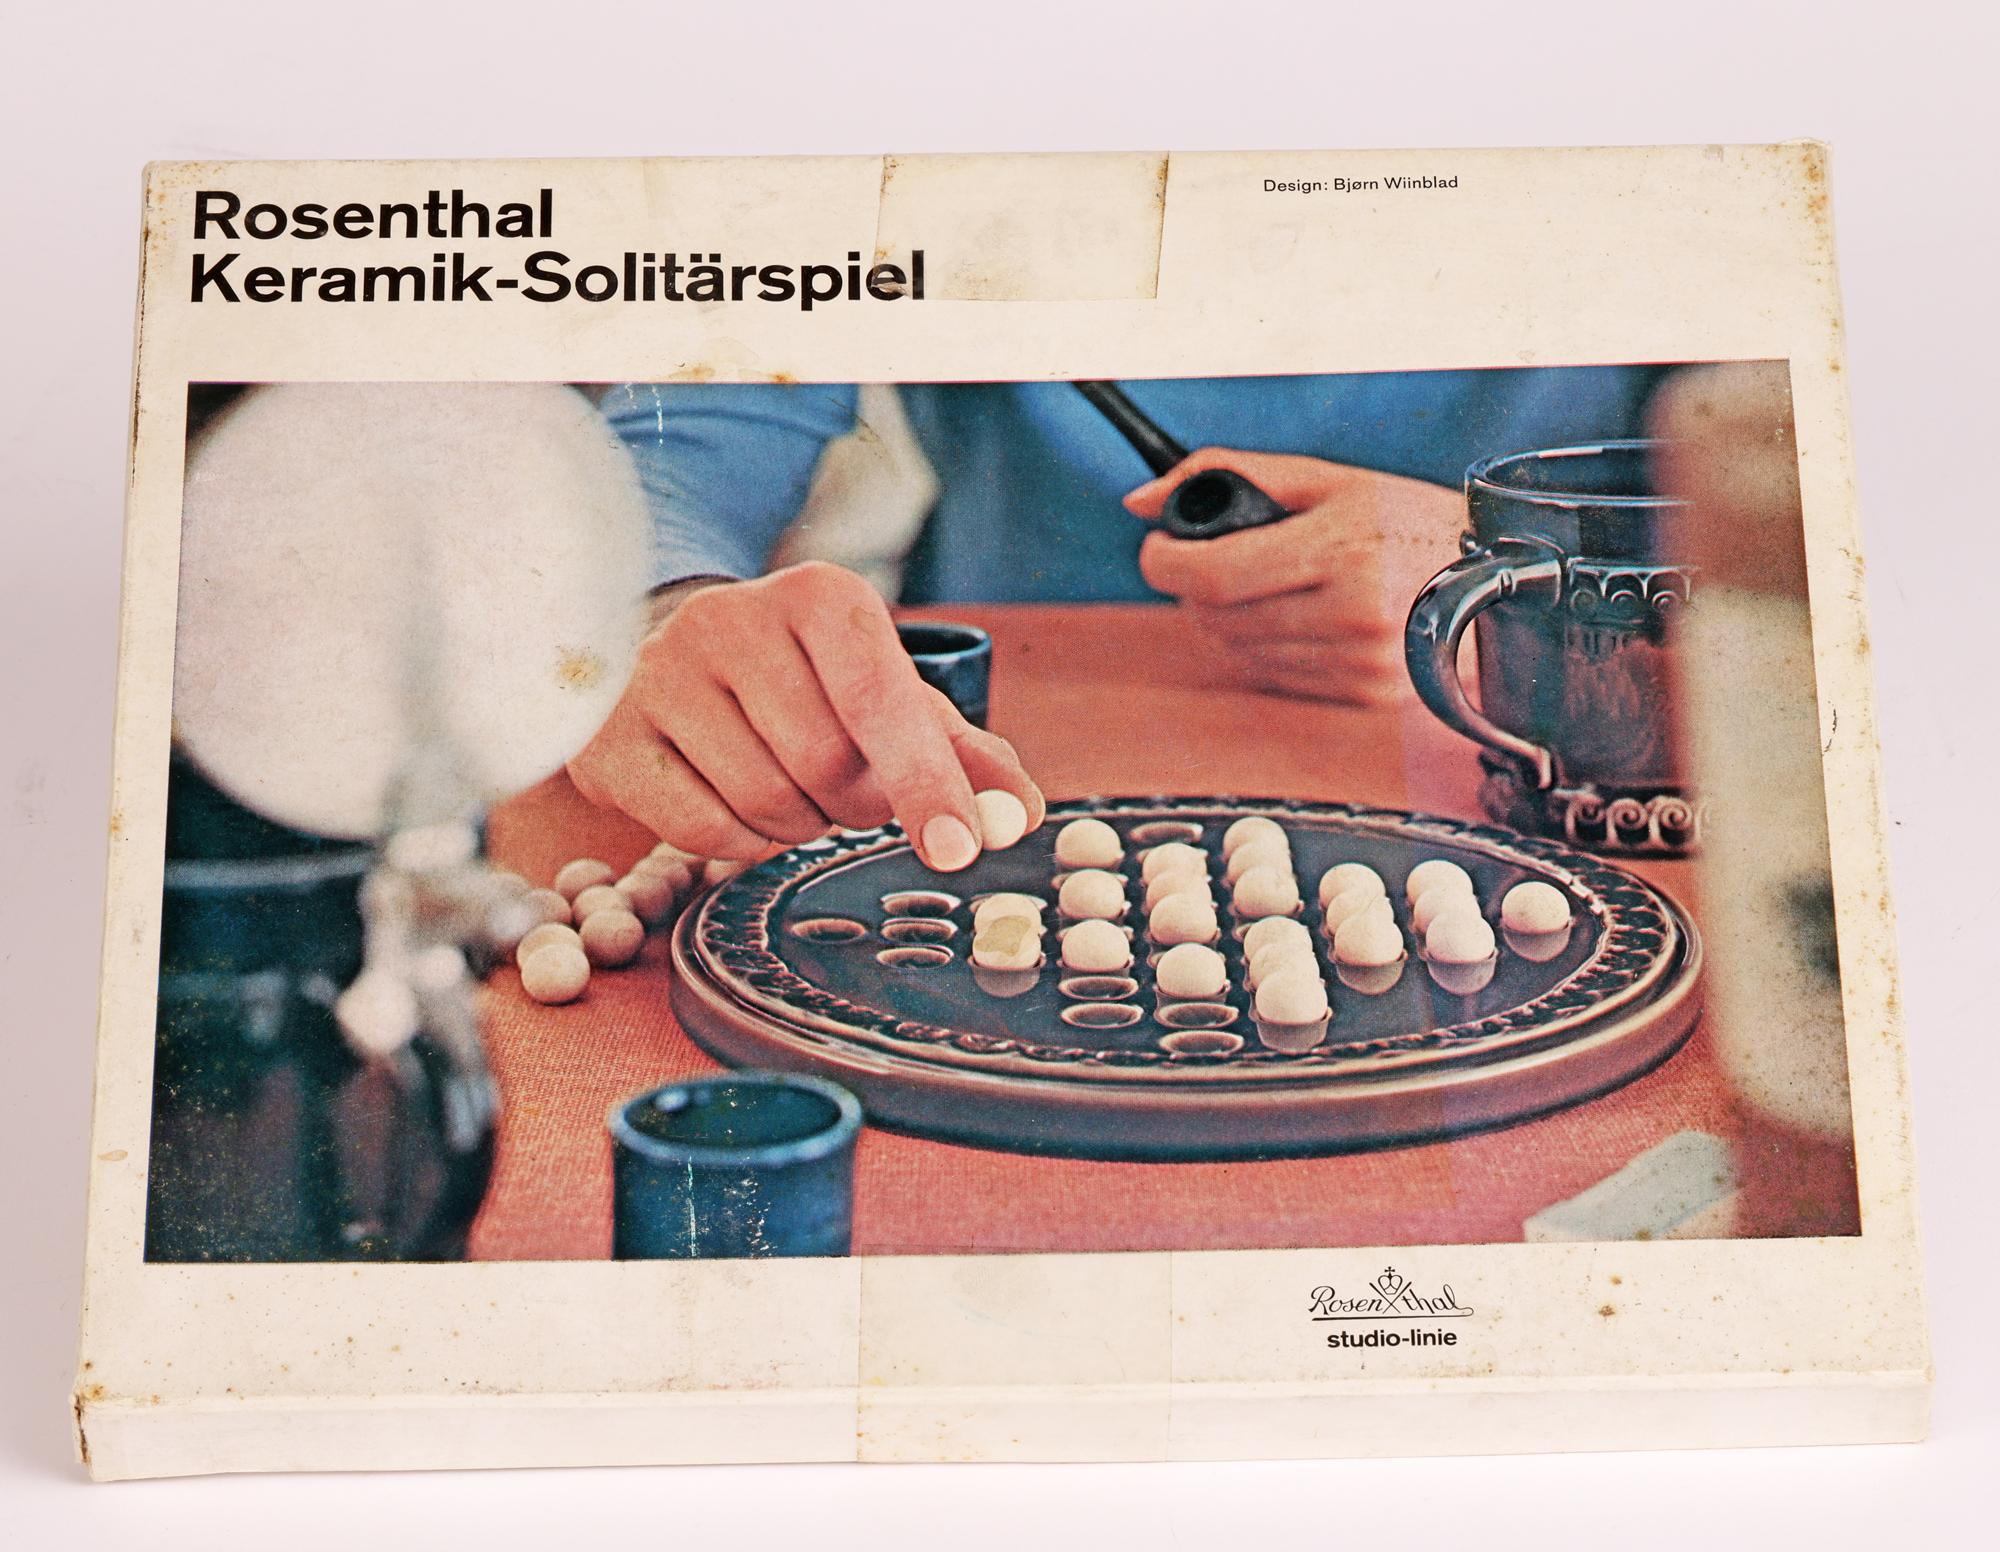 Une élégante boîte d'origine allemande Rosenthal Studio-Linie vintage 'Keramik-Solitärspiel' (jeu de solitaire) par le célèbre peintre, designer et artiste danois Bjørn Wiinblad (danois, 1918-2006) et datant d'environ 1979.

Né à Copenhague, Bjorn